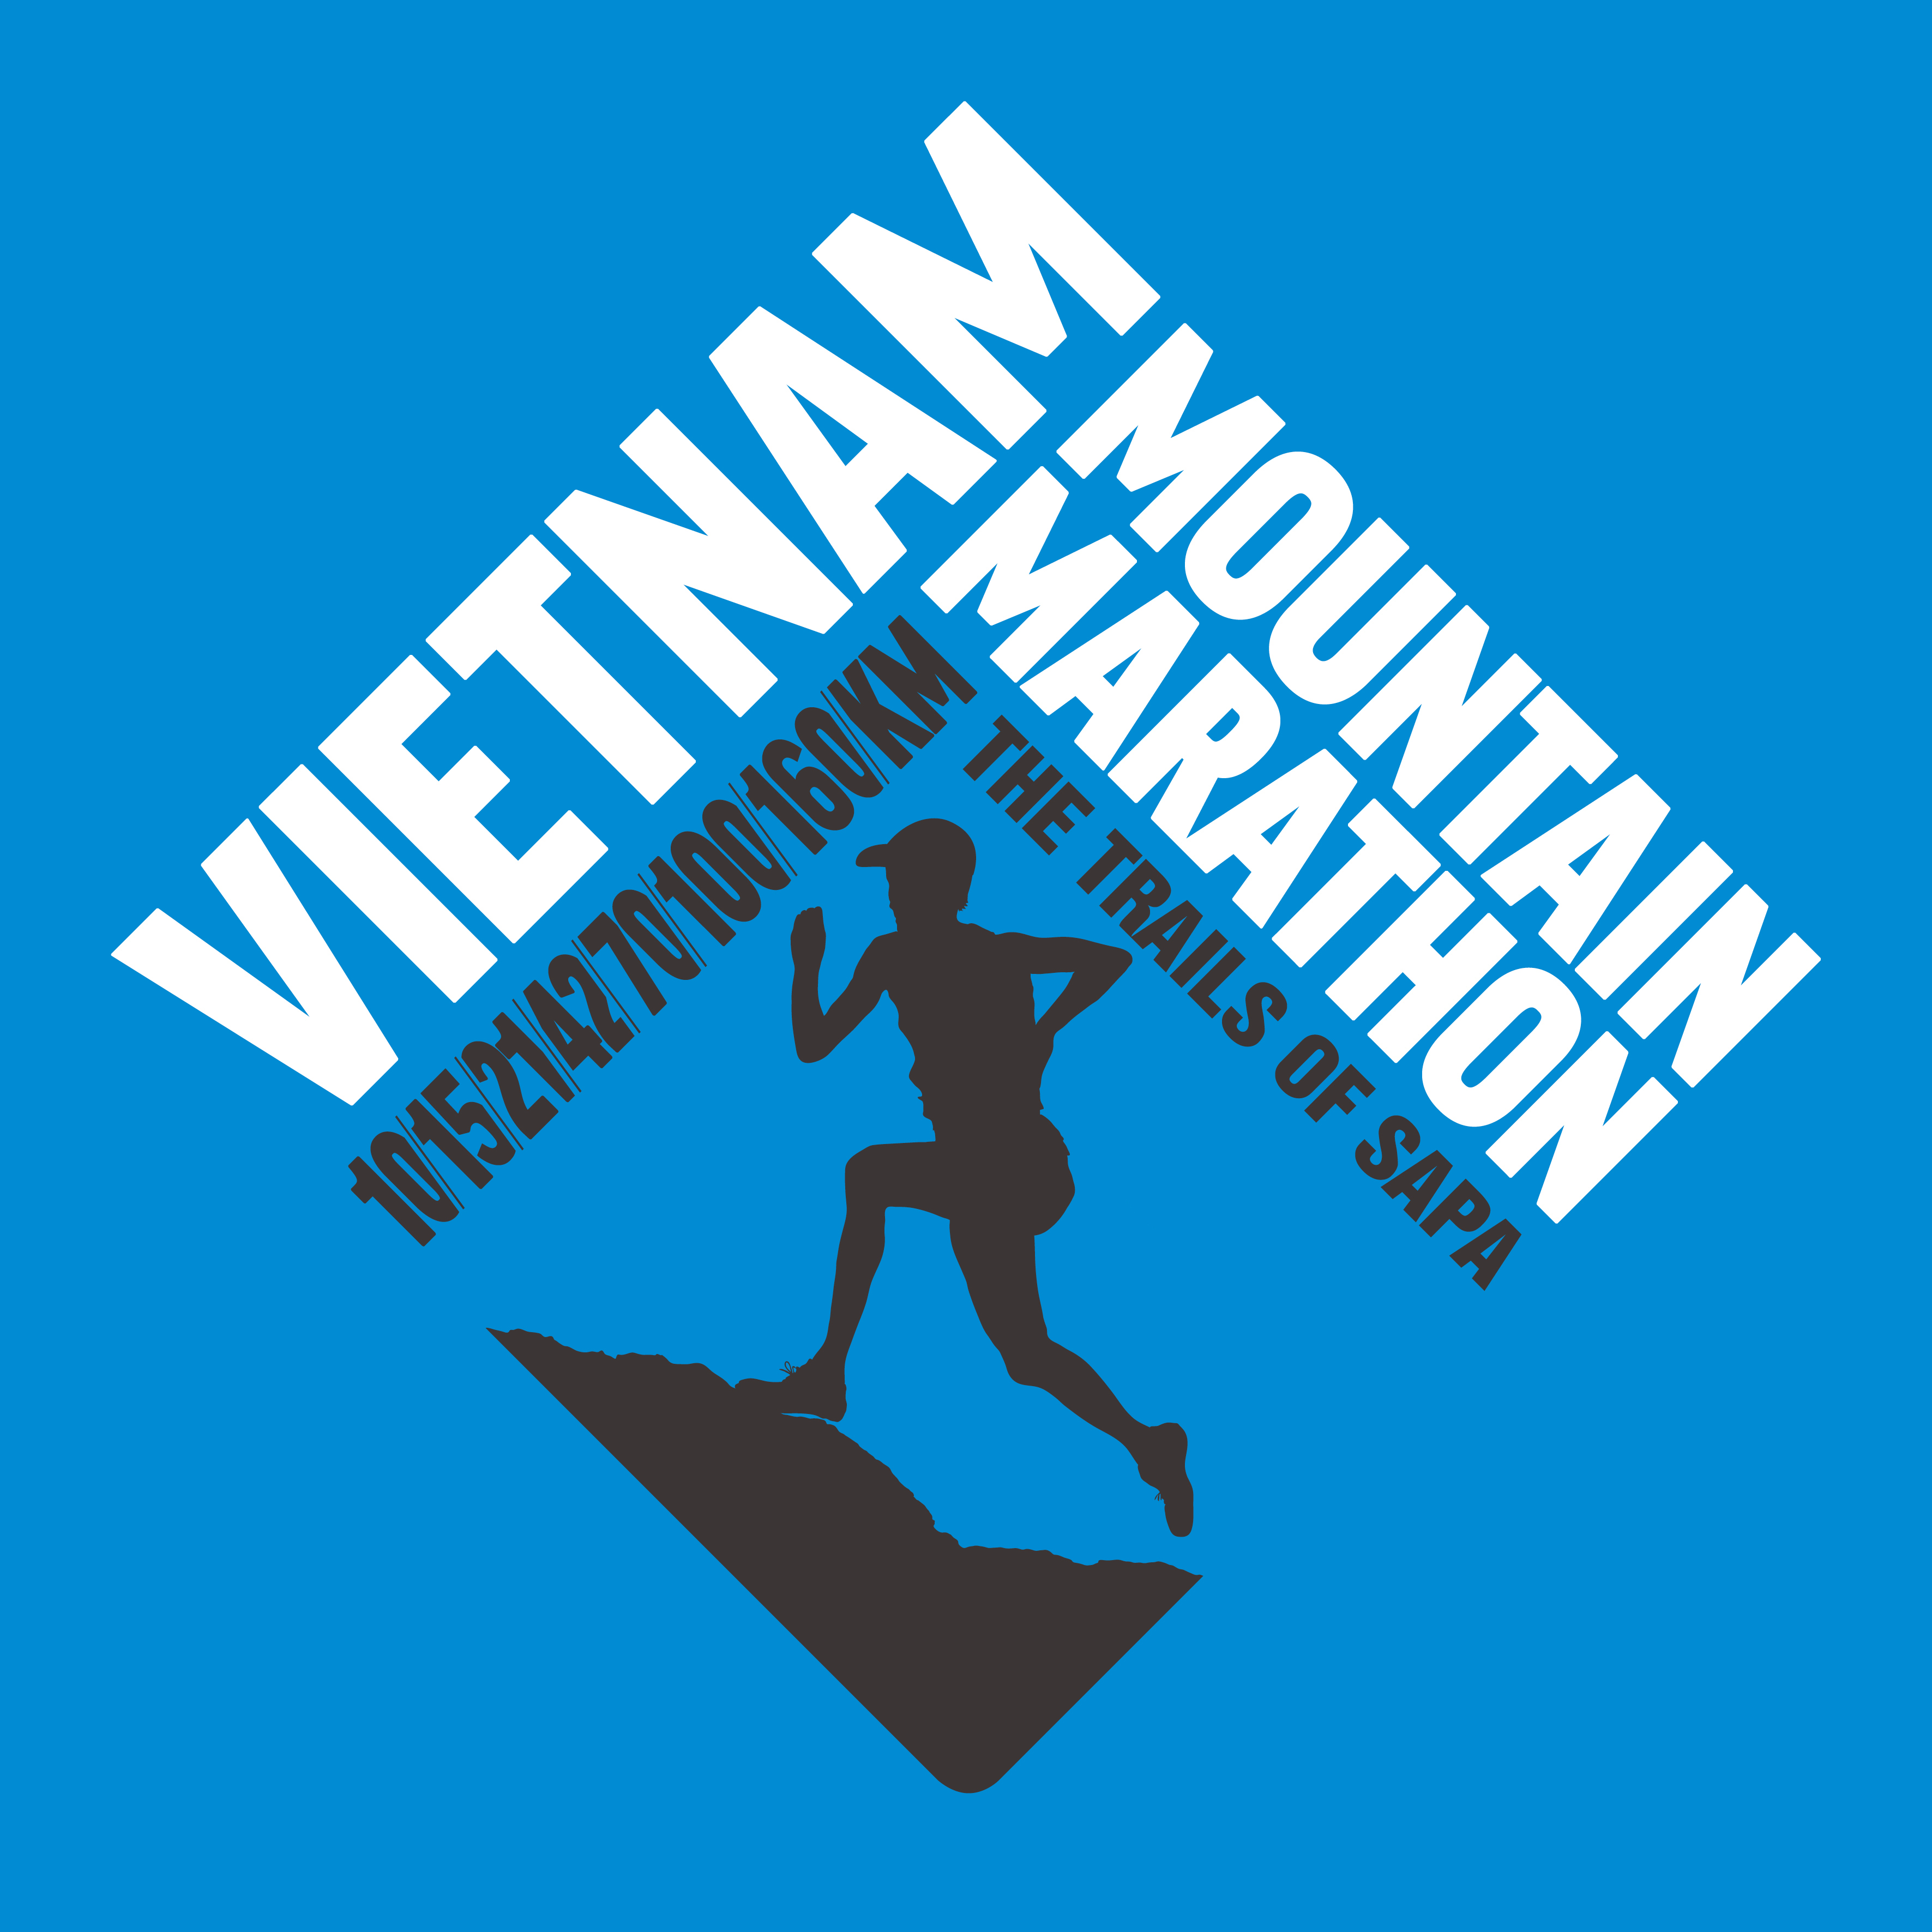 Vietnam Mountain Marathon Vietnam Trail Series by Topas